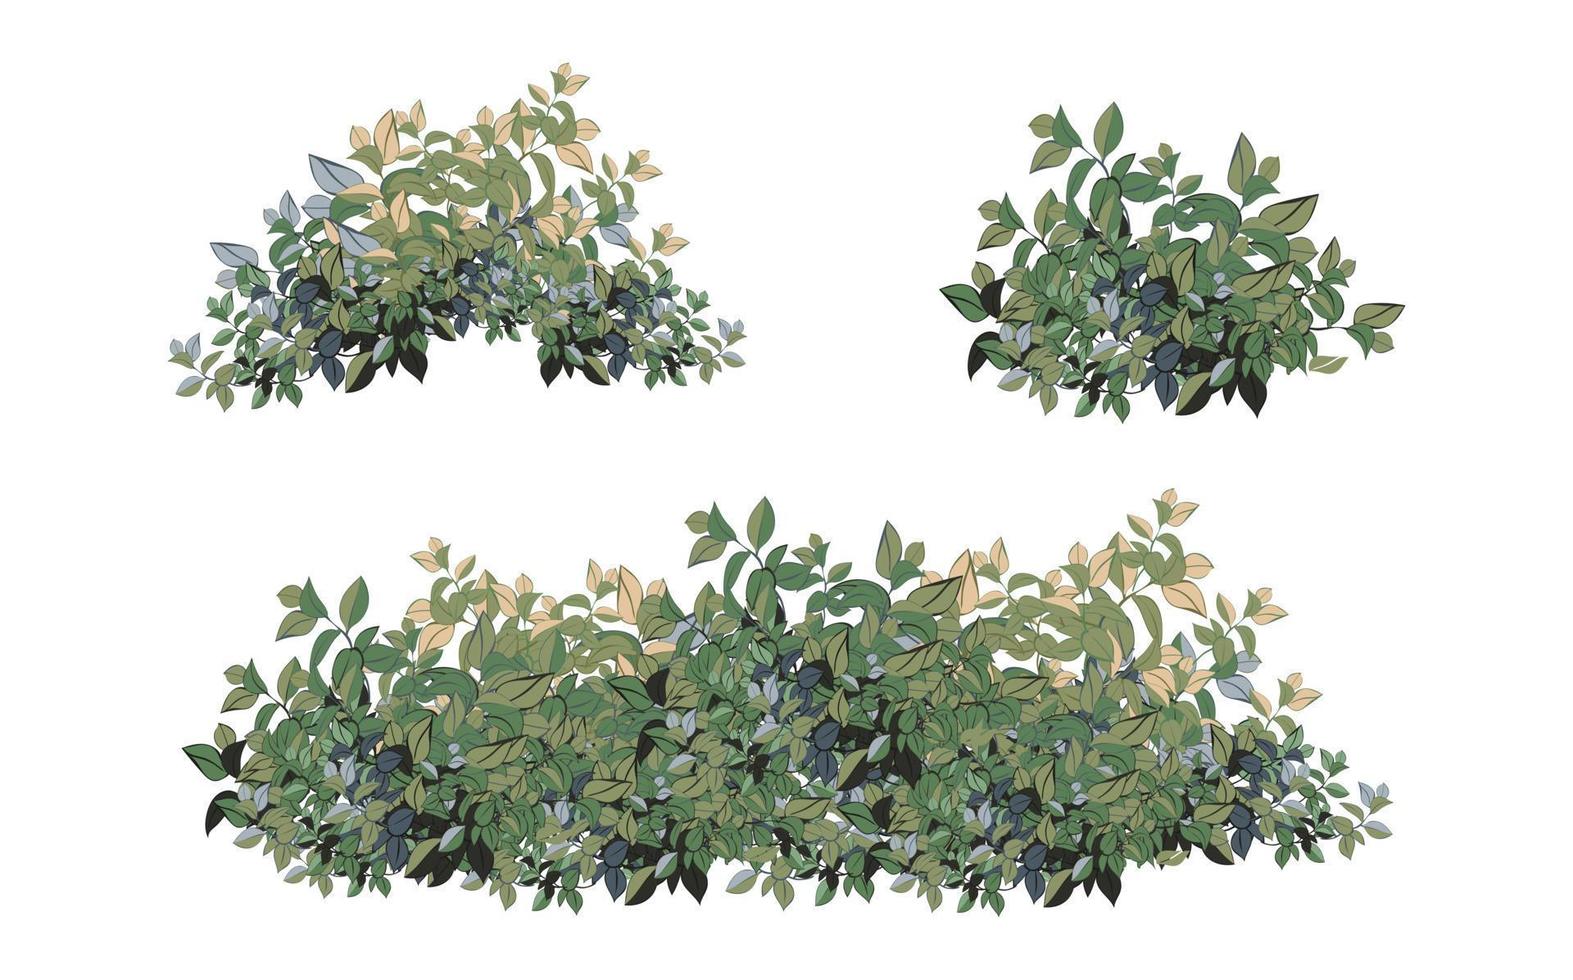 conjunto de plantas verdes ornamentales en forma de seto. arbusto de jardín realista, arbusto de temporada, boj, follaje de arbusto de corona de árbol. vector